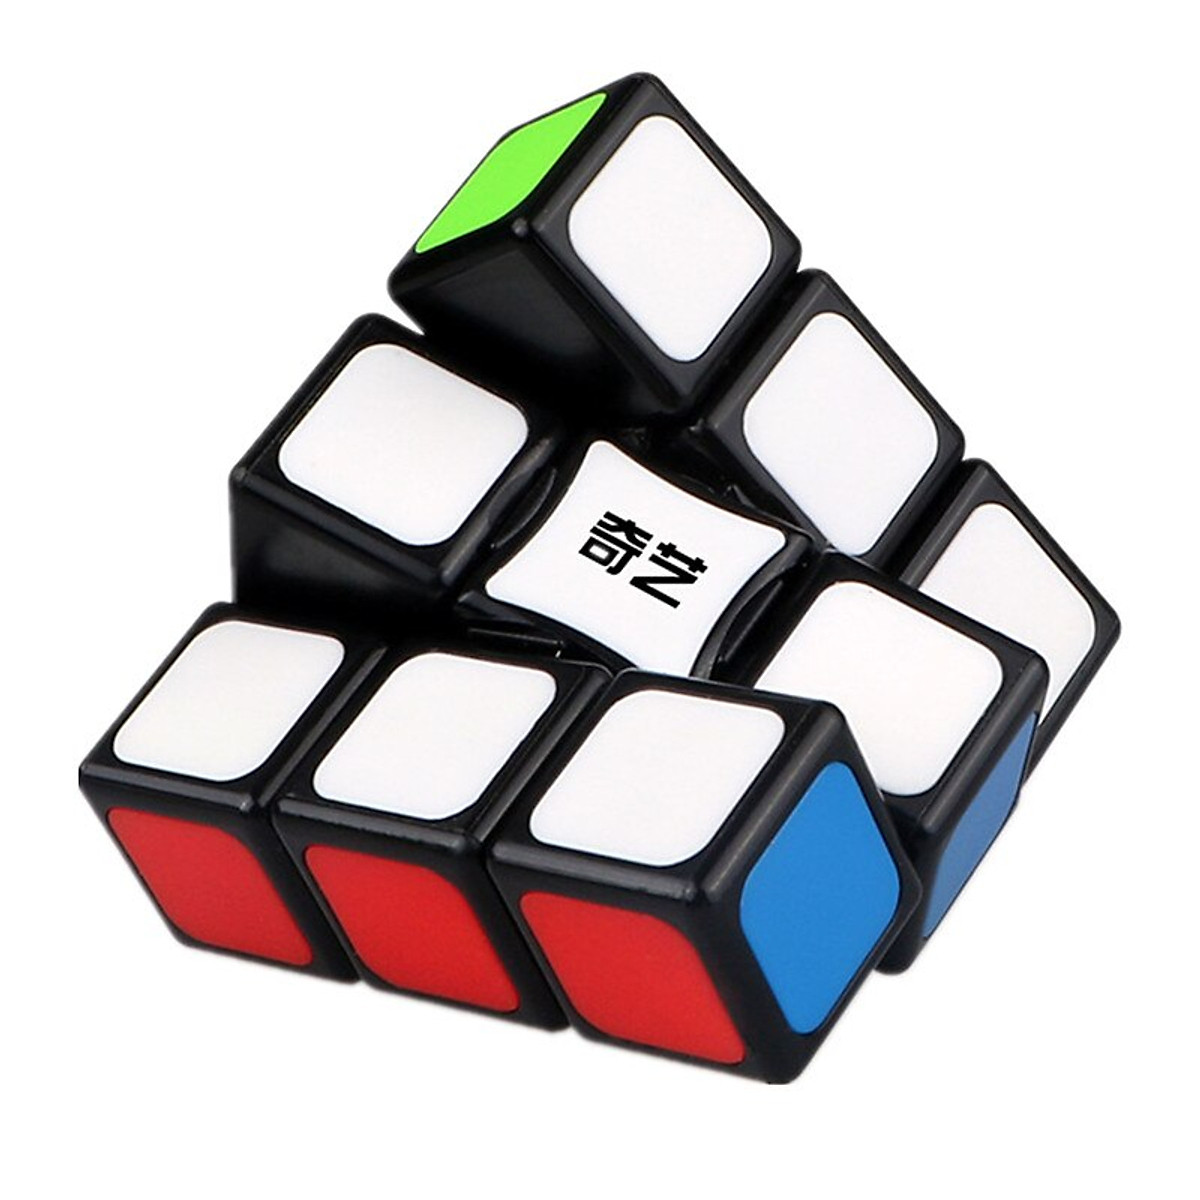 Đồ chơi Rubik 1x3x3